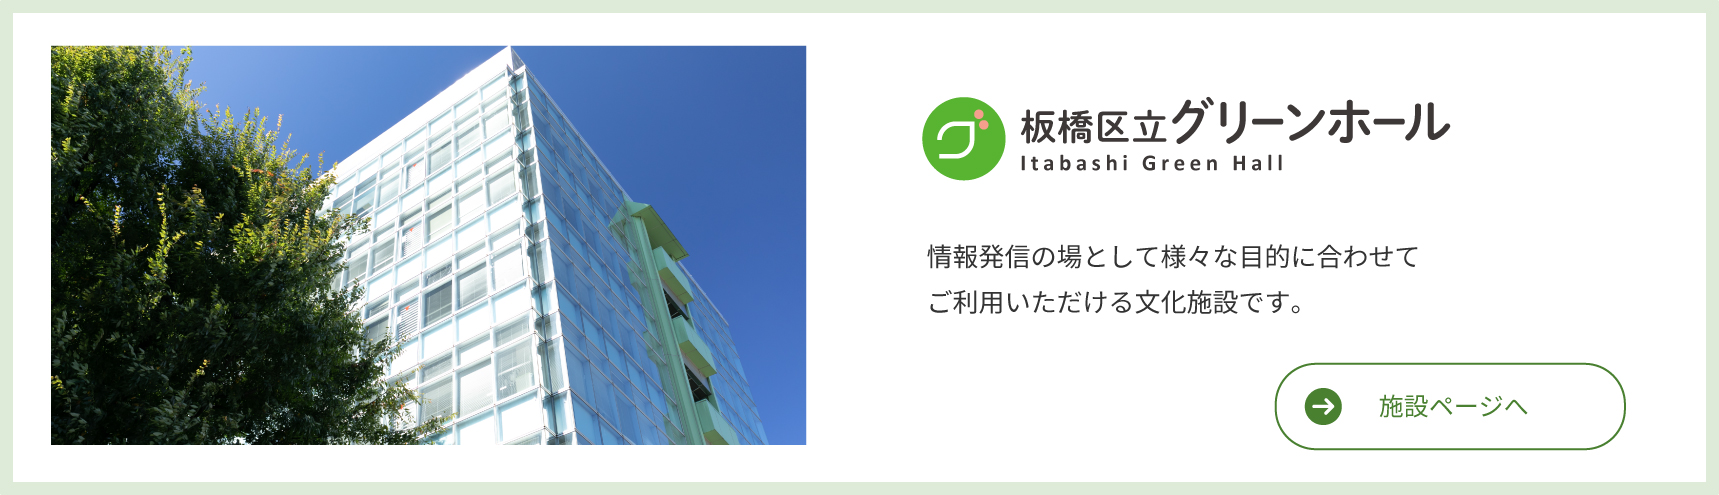 Itabashi Ward Green Hall Kulturális létesítmény, amely különféle célokra használható információterjesztés helyeként.